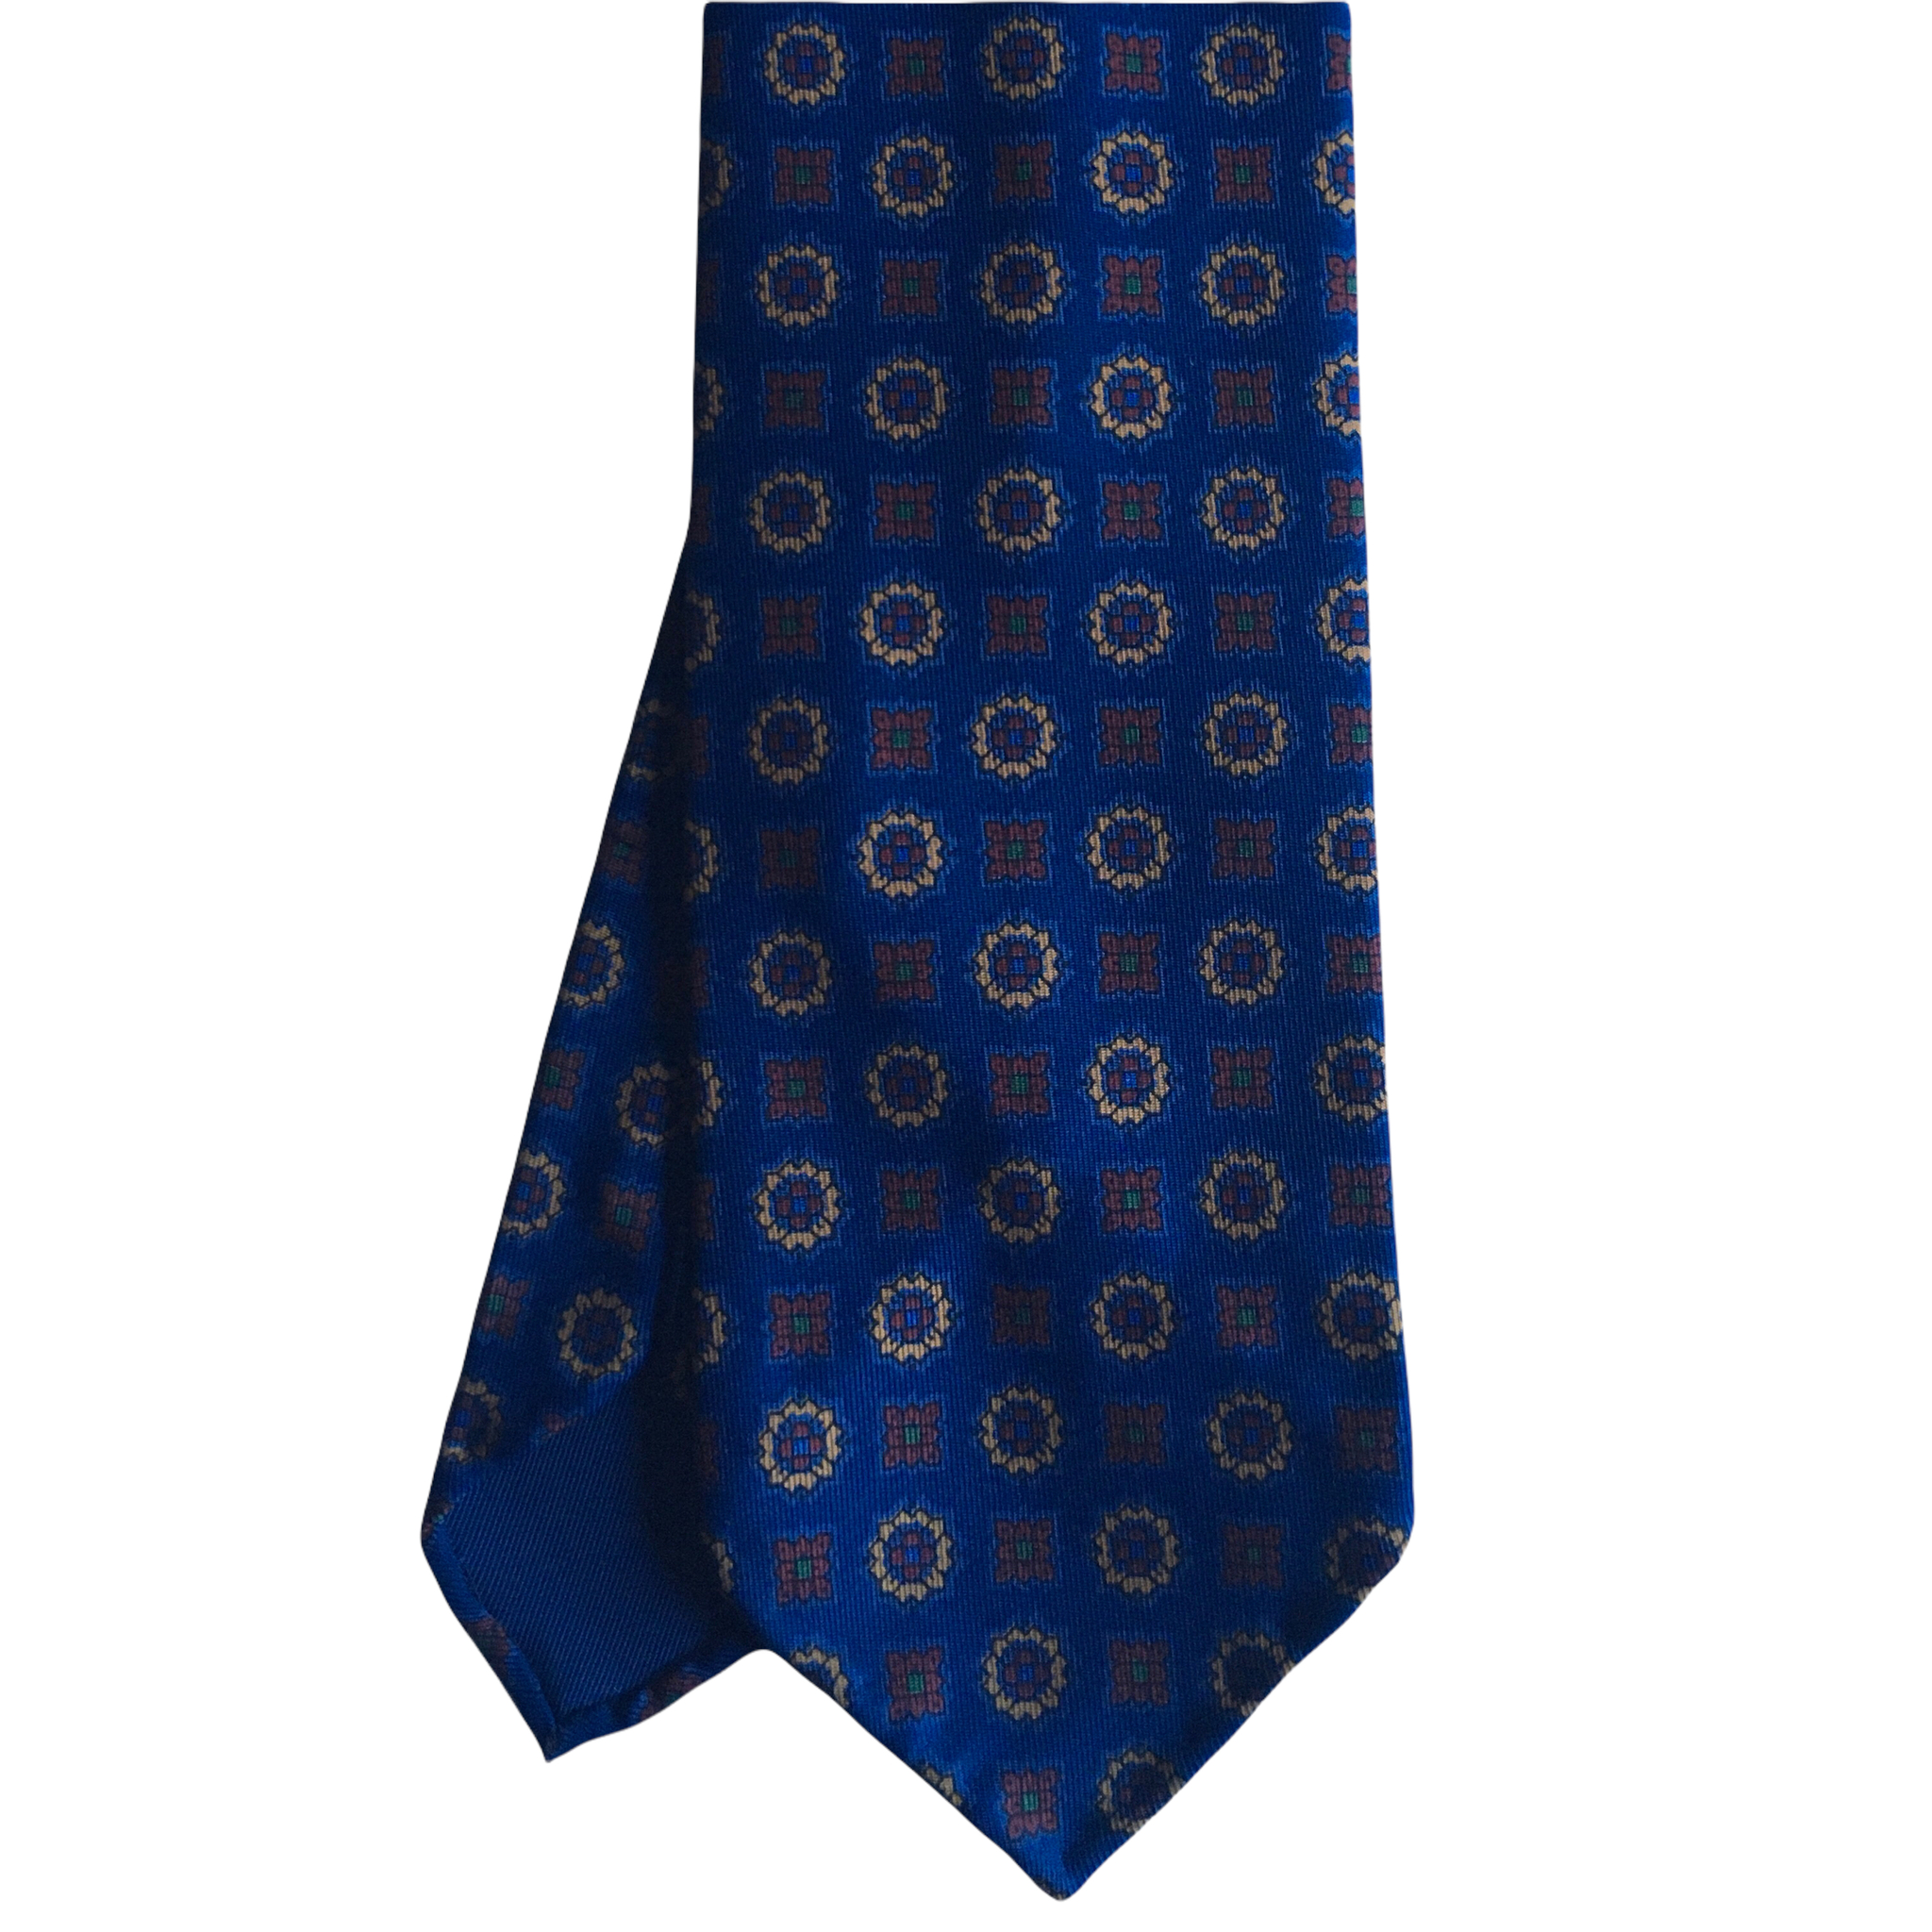 Medallion Ancient Madder Silk Tie - Untipped - Navy Blue/Brown/Beige